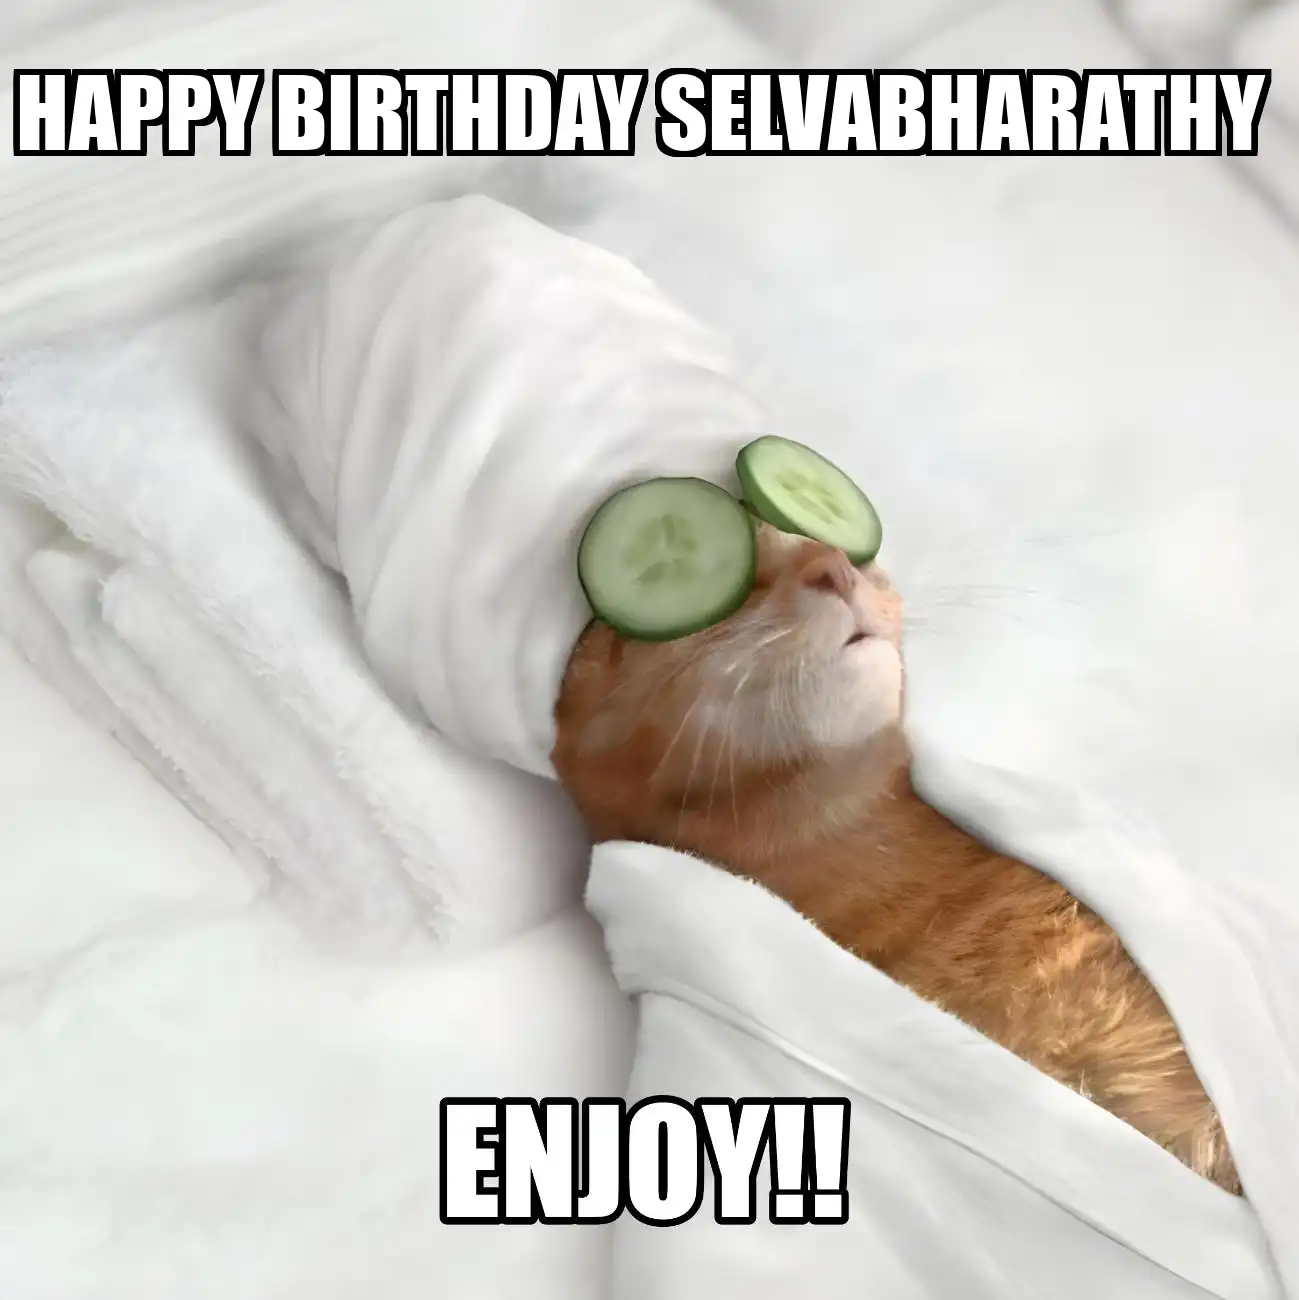 Happy Birthday Selvabharathy Enjoy Cat Meme